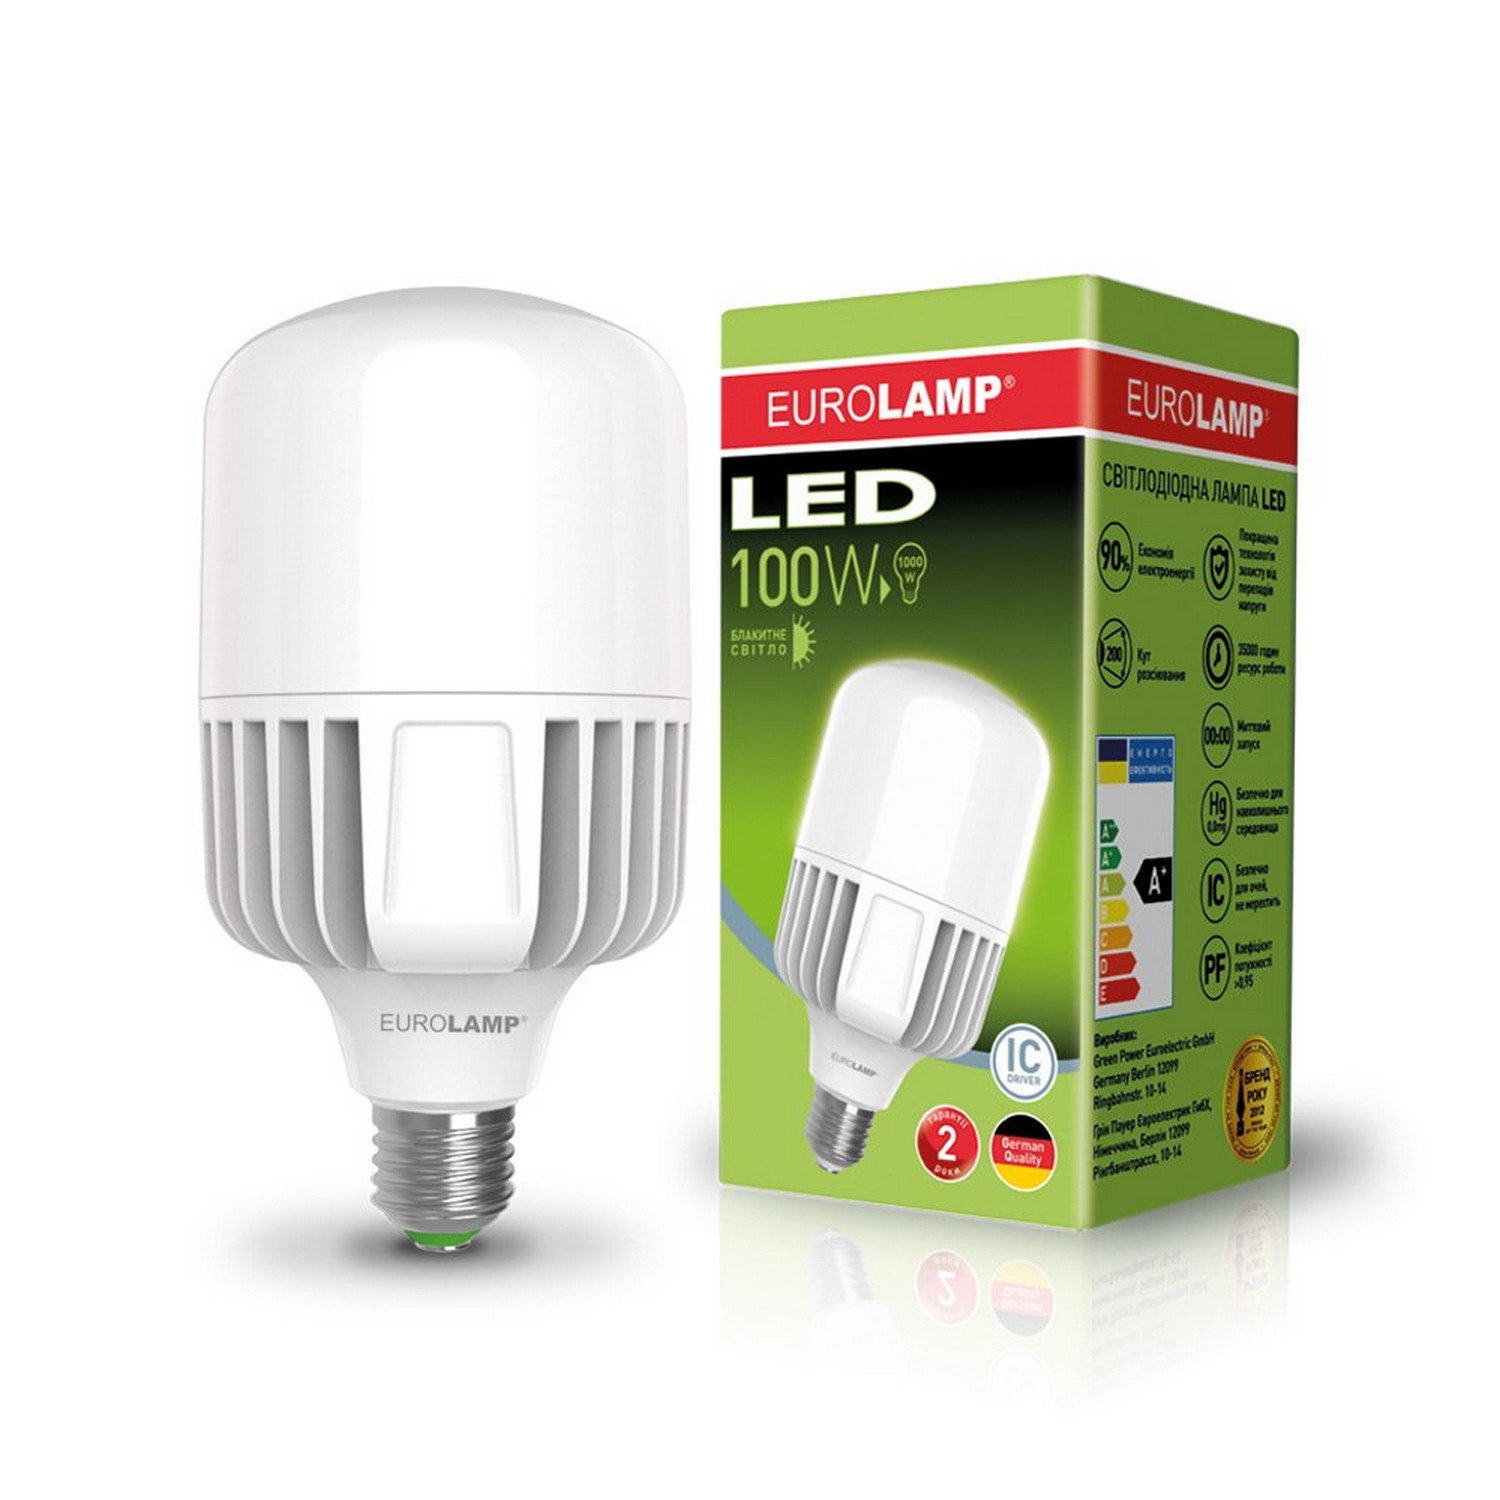 Светодиодная лампа форма специальная Eurolamp LED 100W E40 6500K